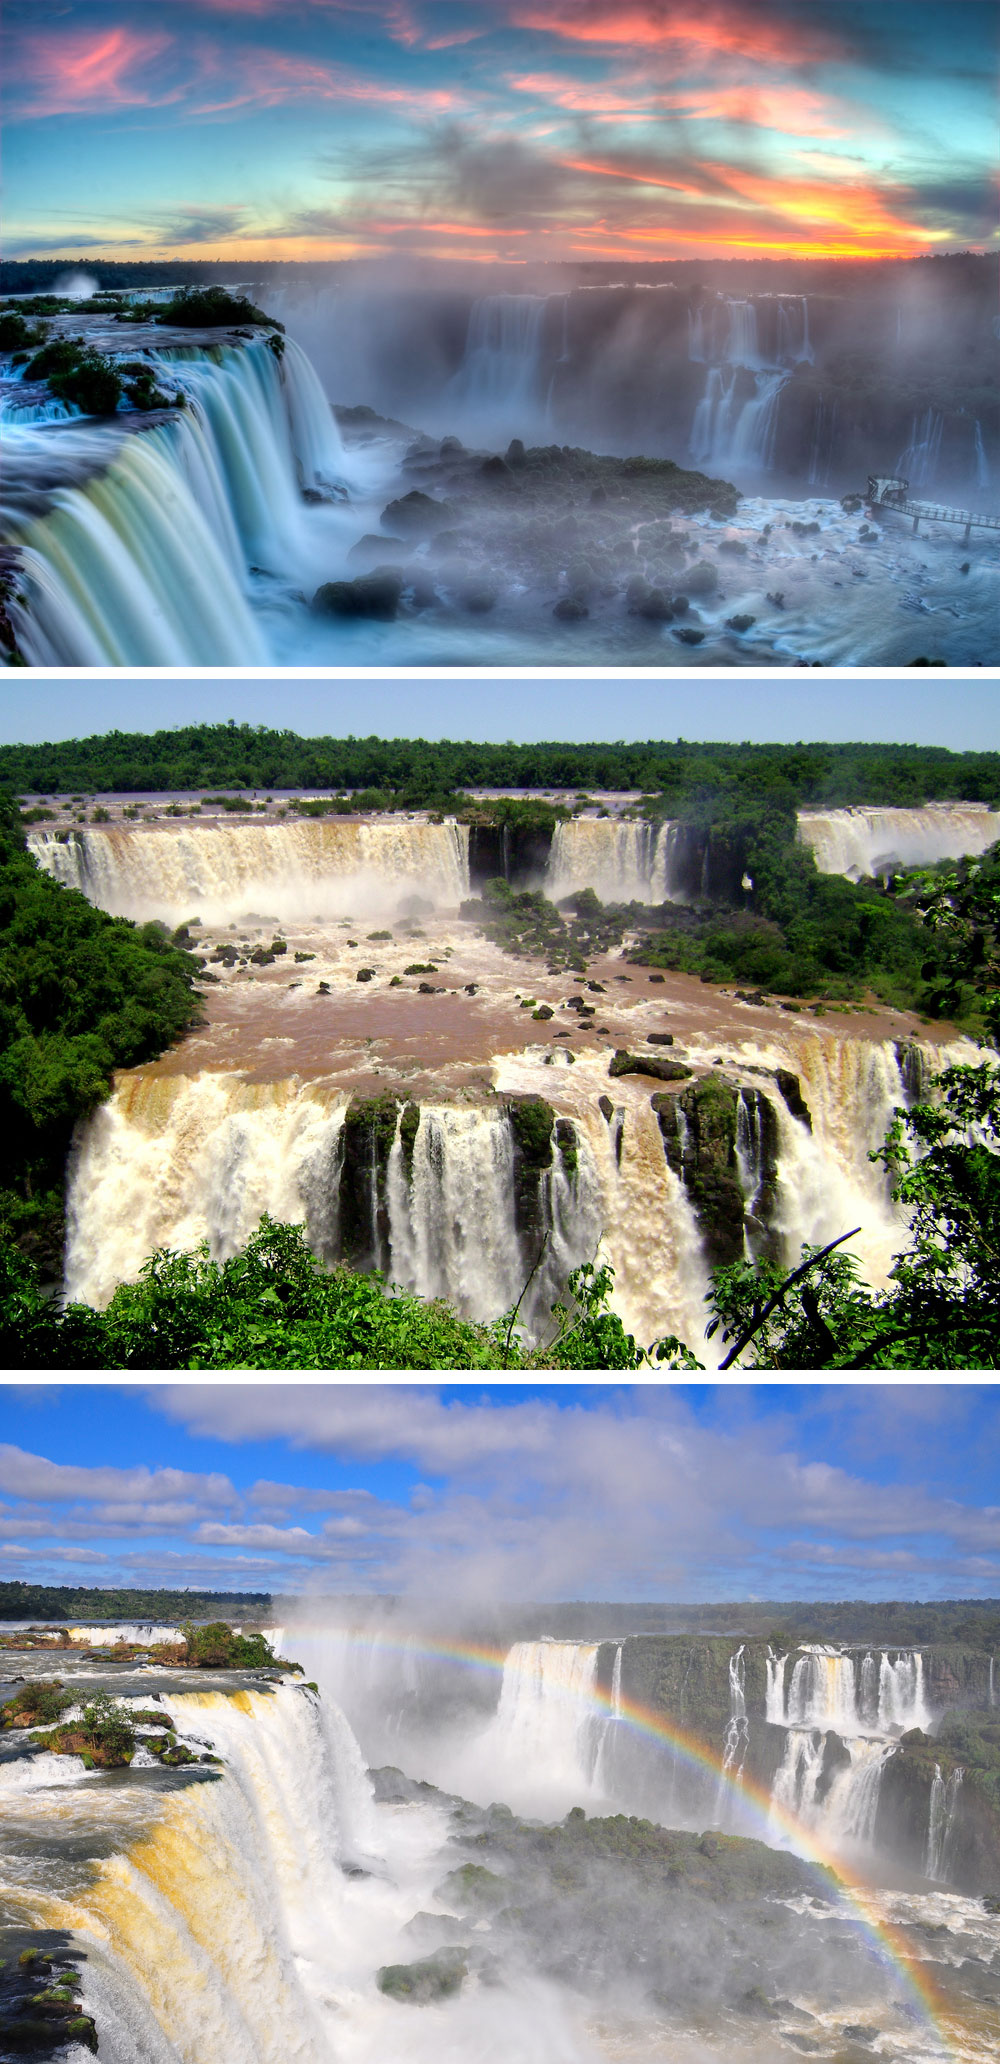 Fakta: Iguazú-vandfalden ligger i Argentina